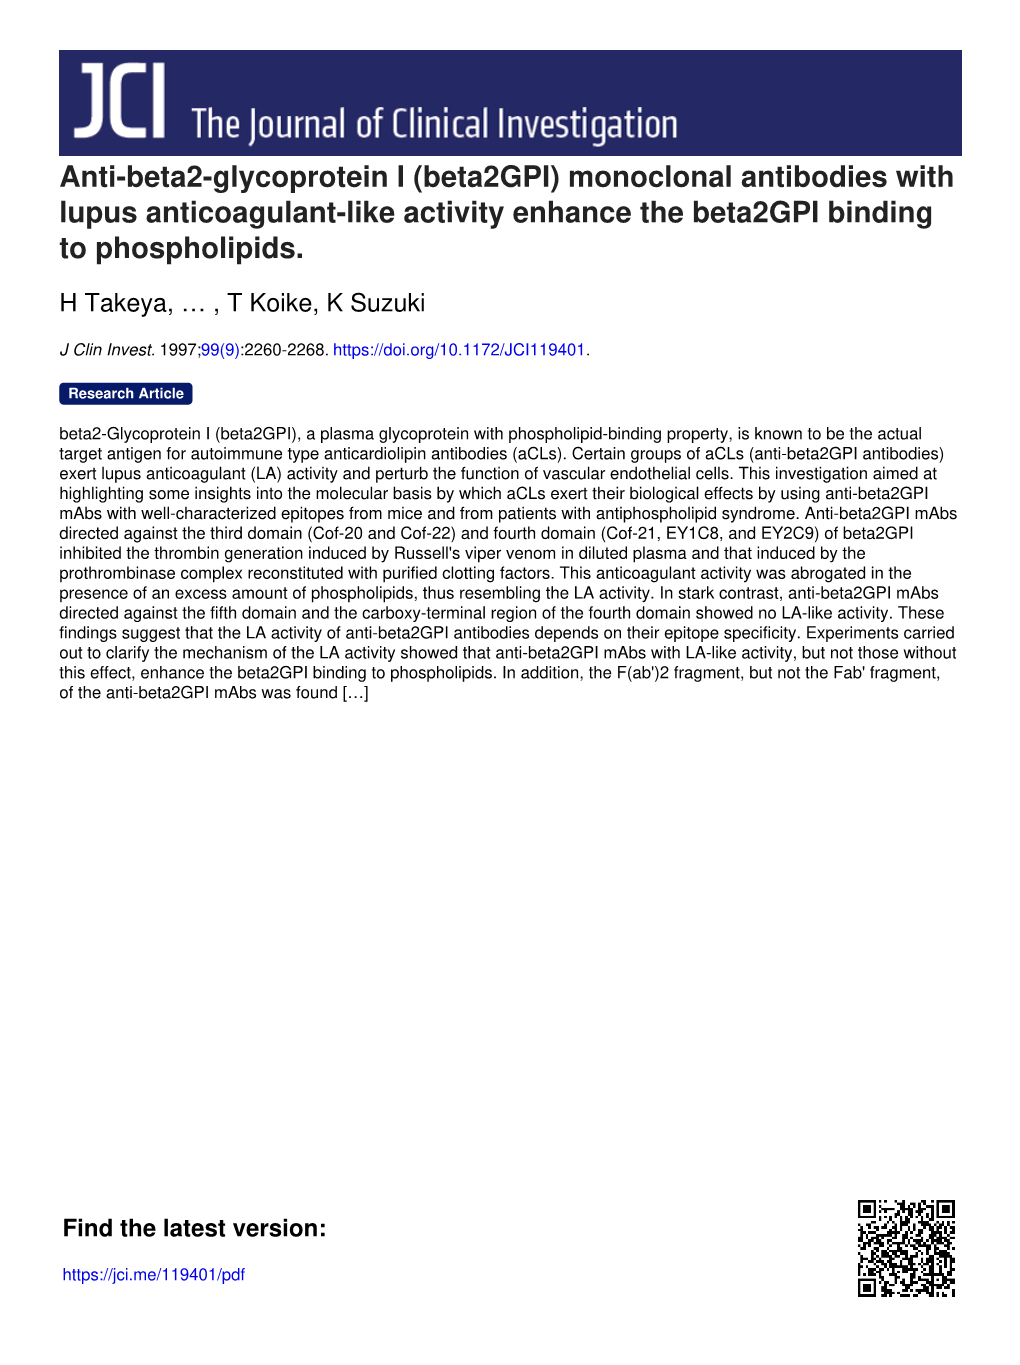 Anti-Beta2-Glycoprotein I (Beta2gpi) Monoclonal Antibodies with Lupus Anticoagulant-Like Activity Enhance the Beta2gpi Binding to Phospholipids